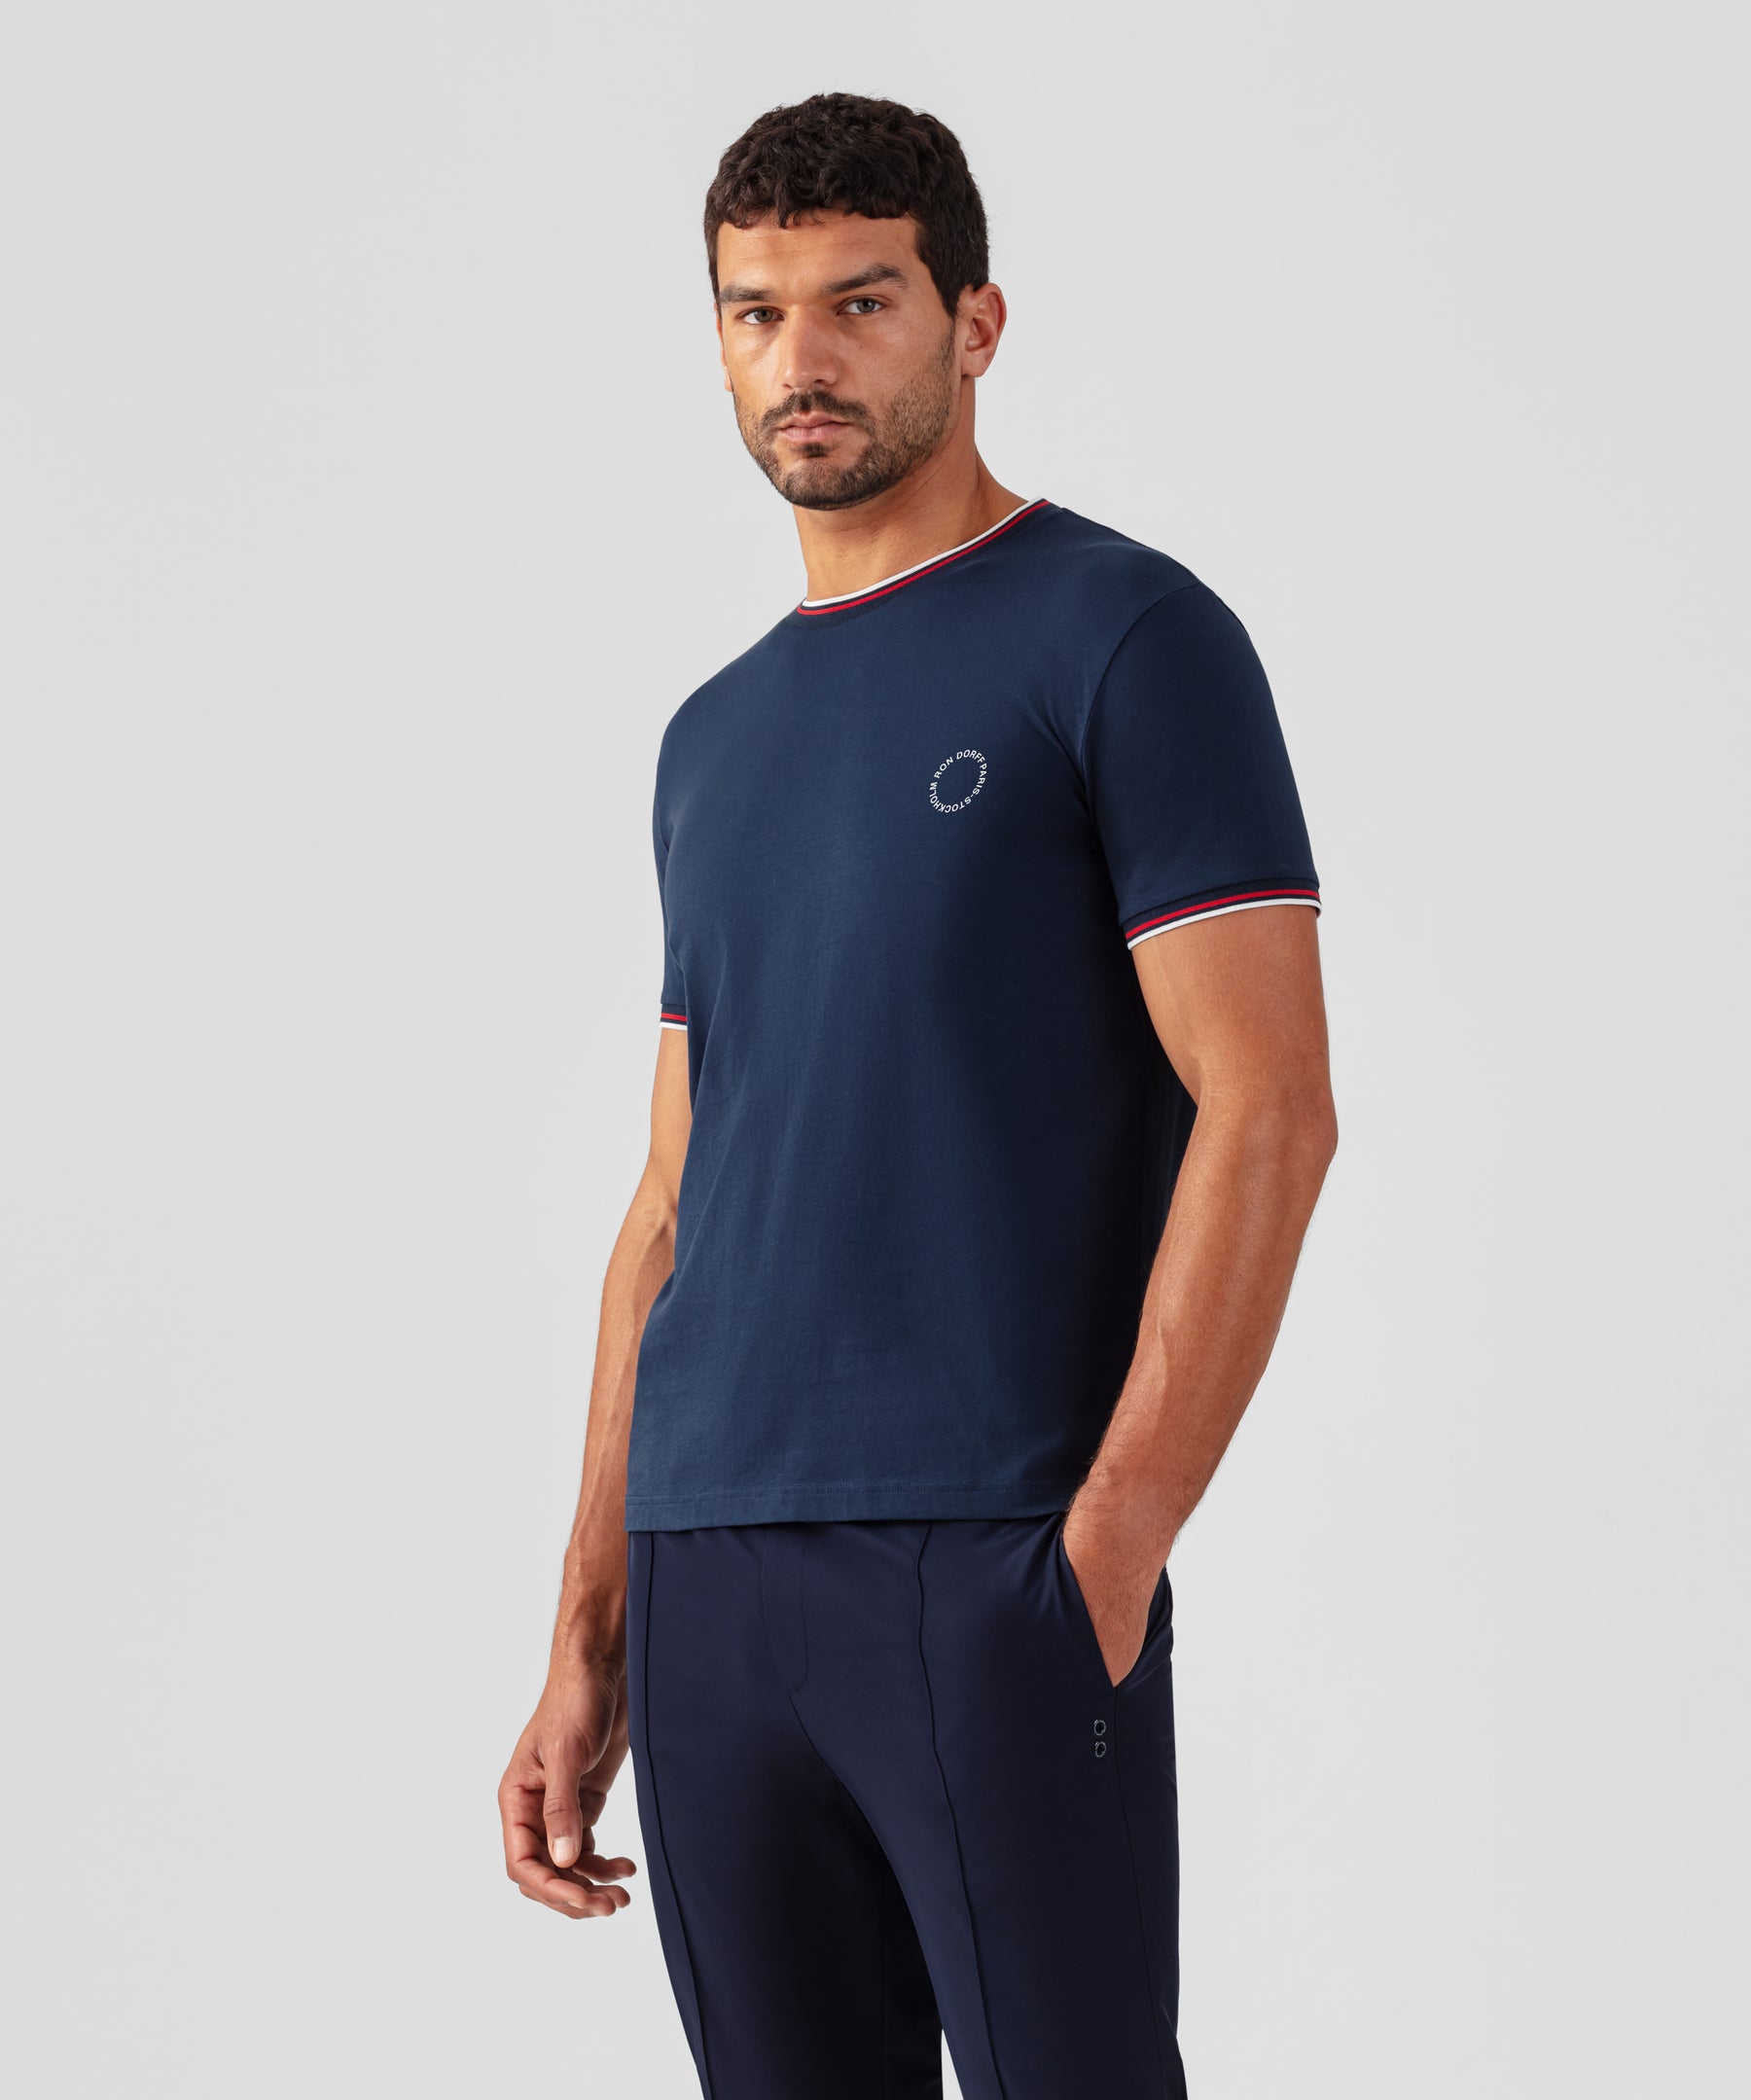 T-shirt en coton organique à bandes rayées: Bleu marine